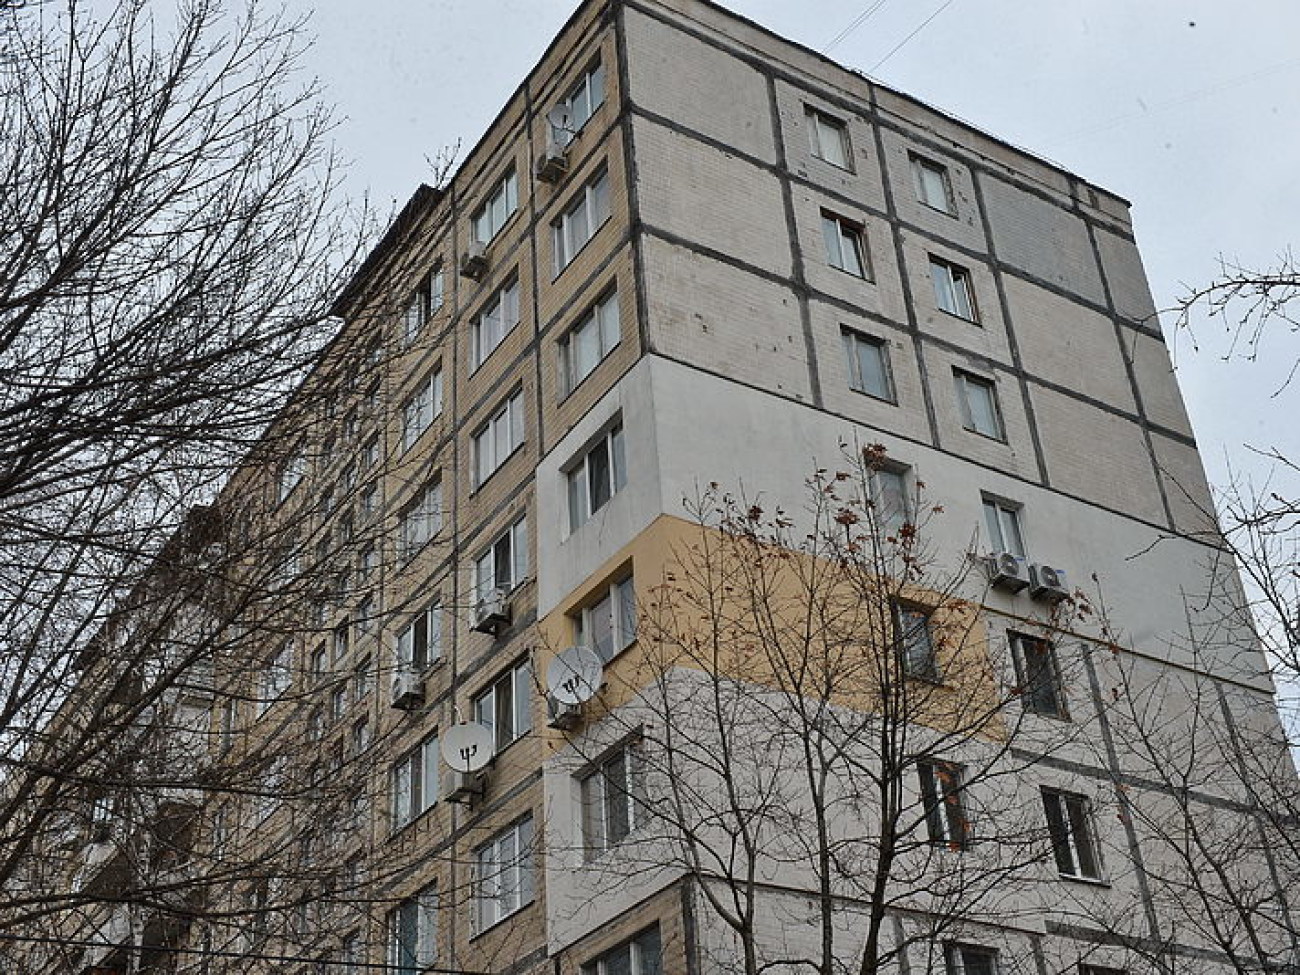 Обедневшие украинцы пытаются утеплять свое жилье, не дожидаясь помощи от властей